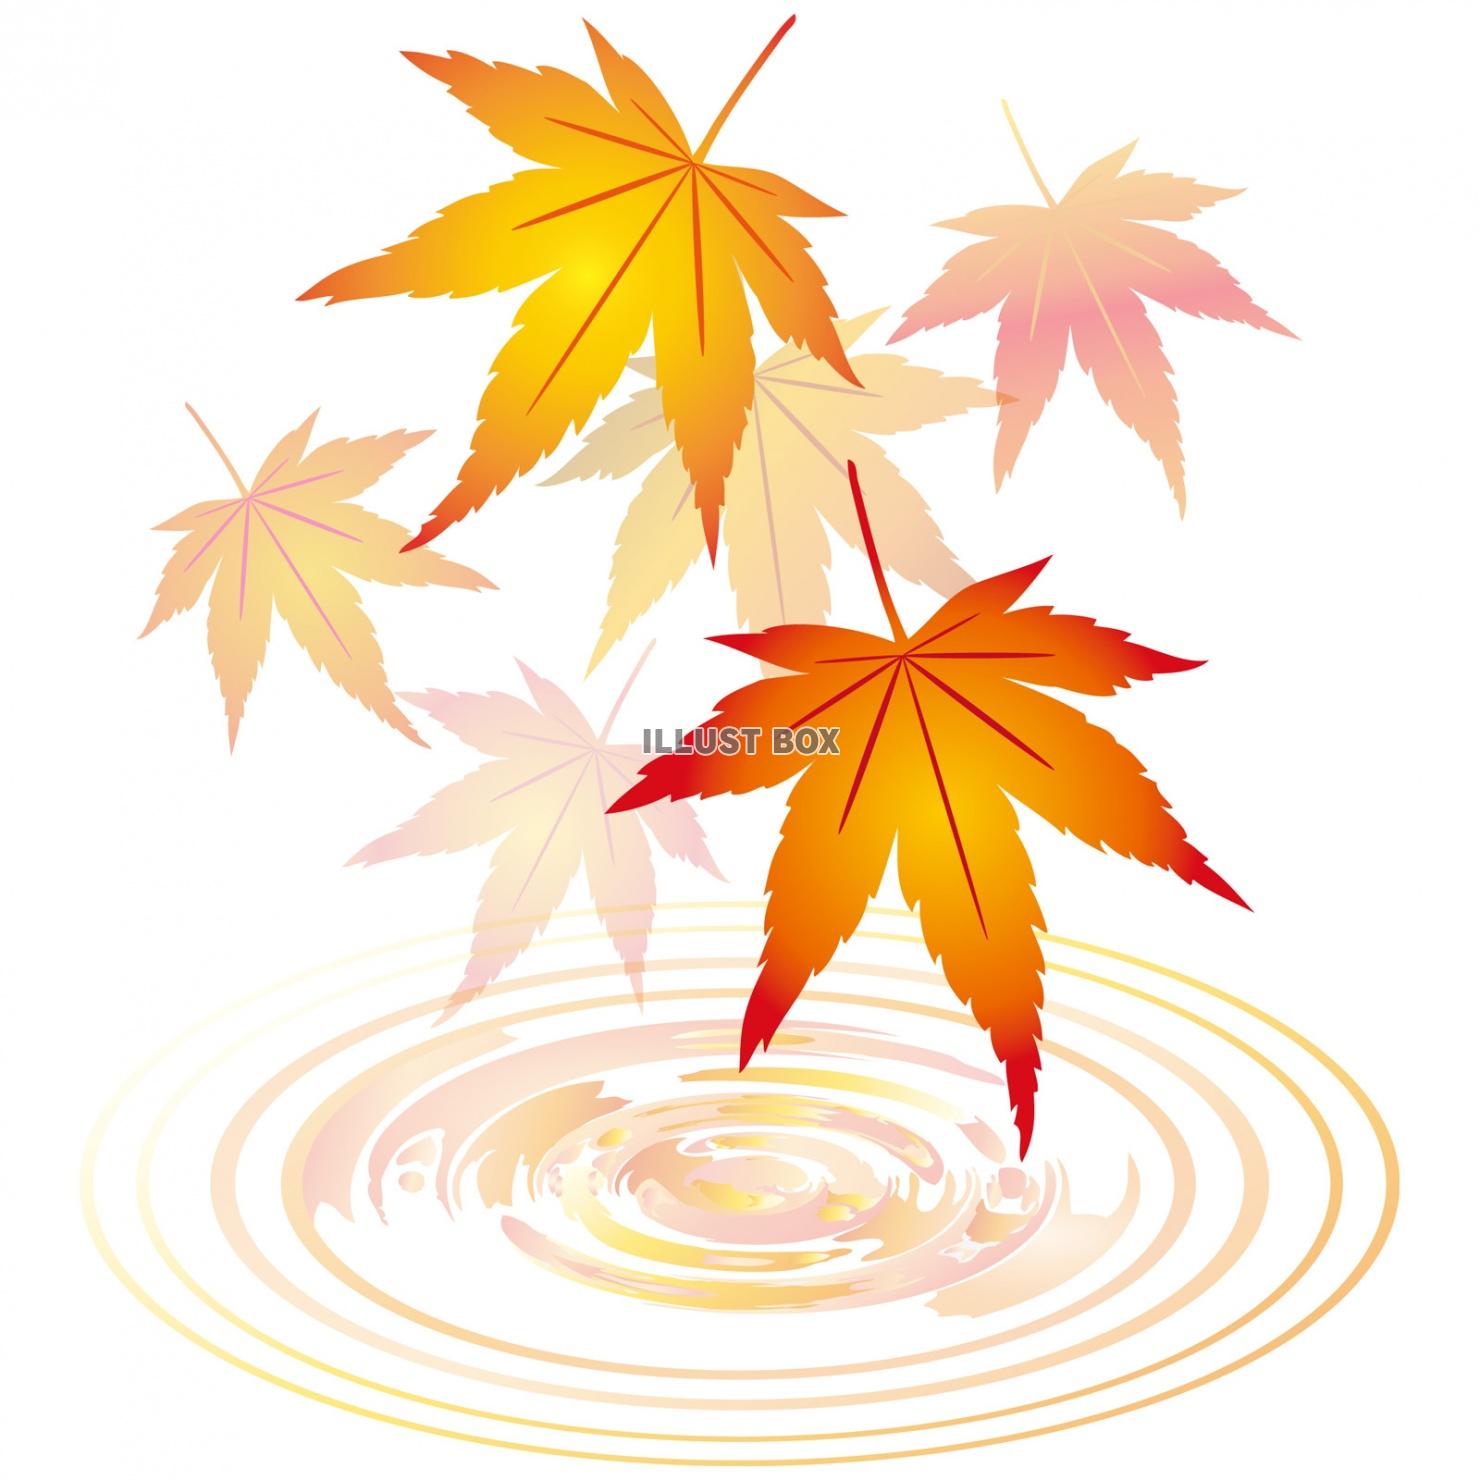 無料イラスト 紅葉もみじ飾り装飾水面10月11月モミジ葉っぱ植物楓カエデ波